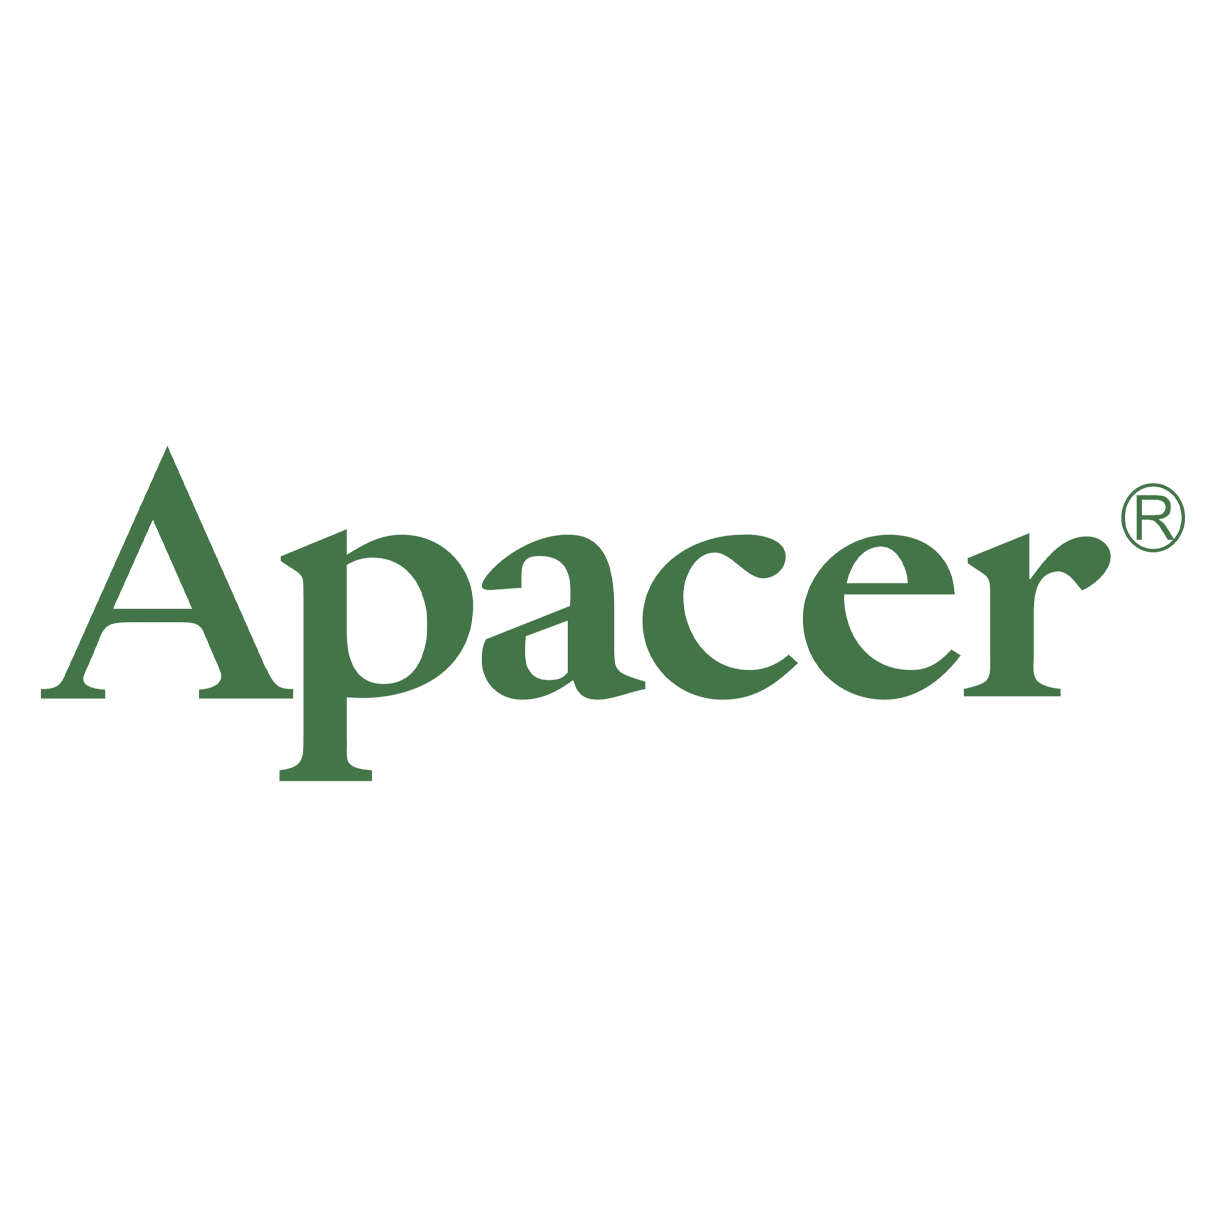 Apacer-brand-logo